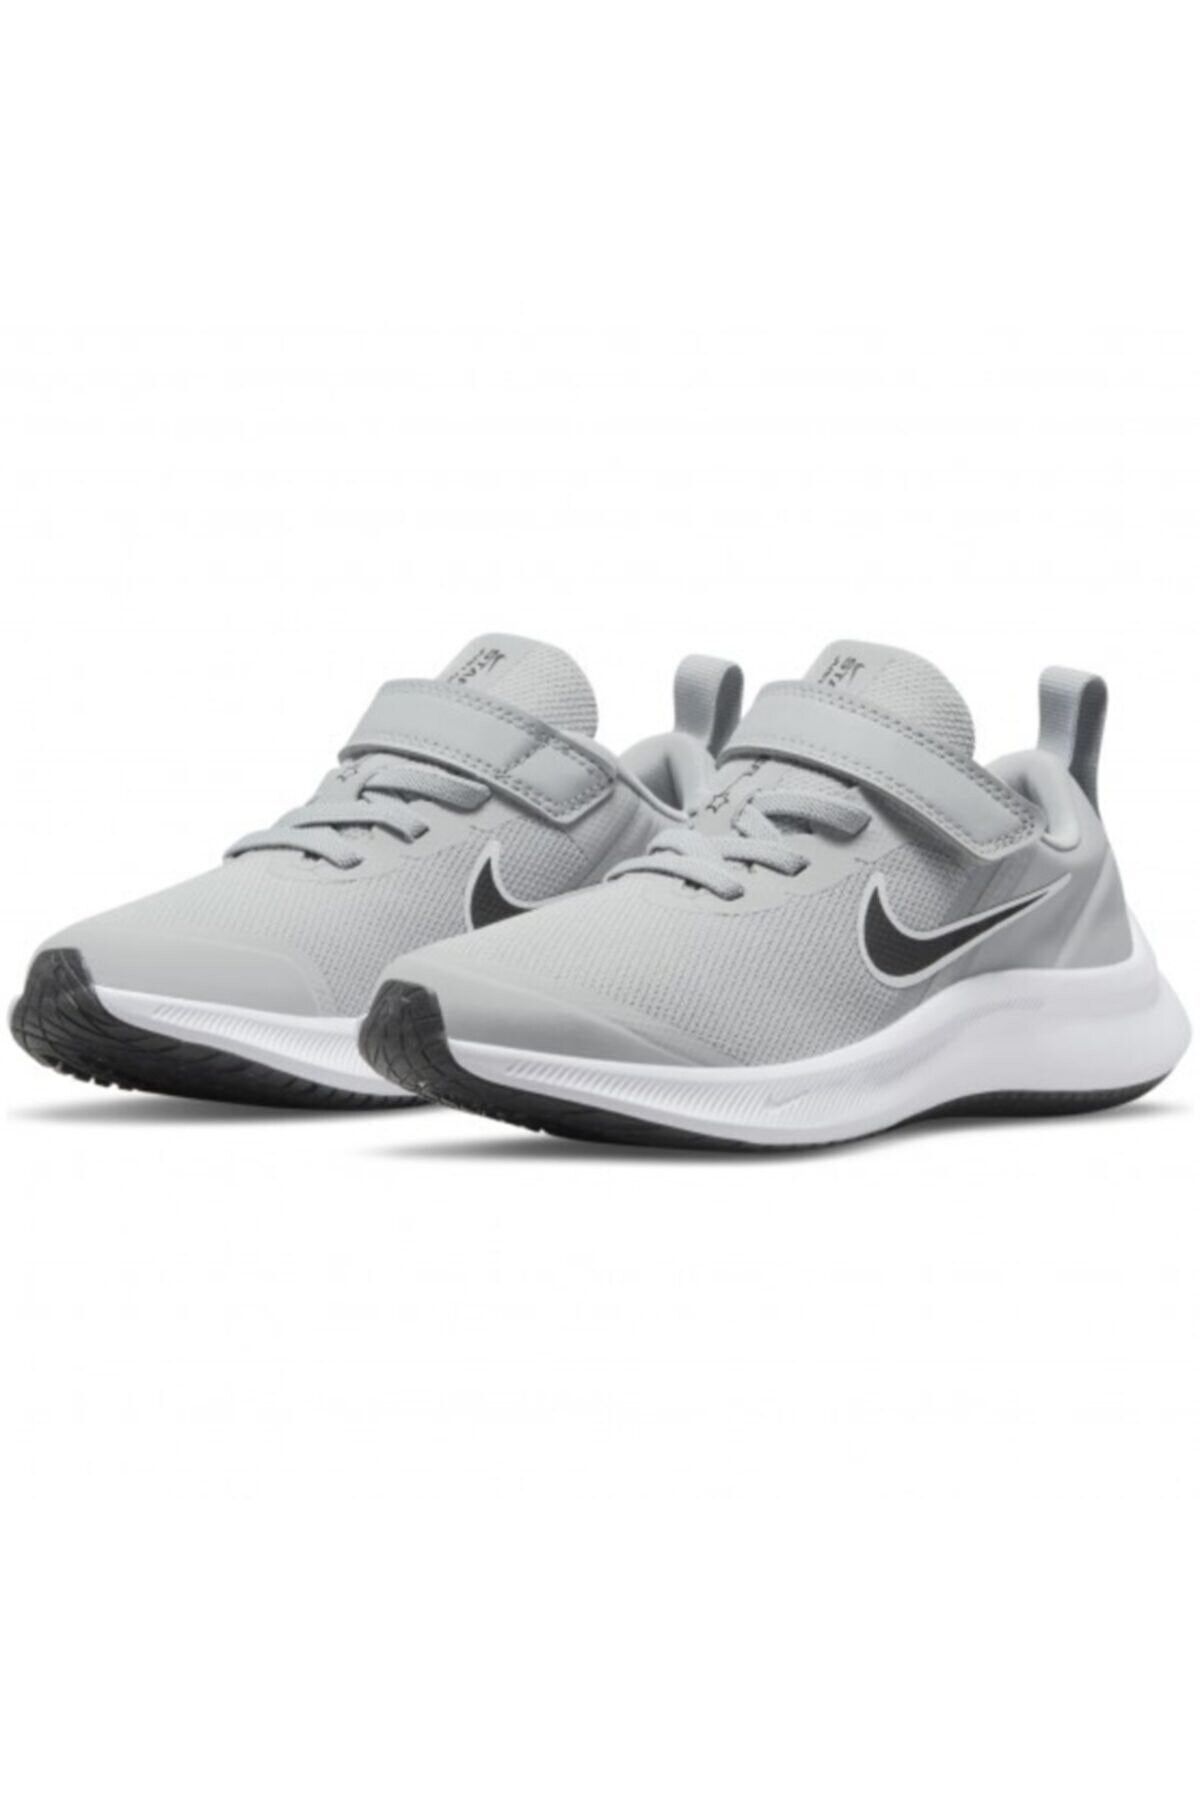 Nike Star Runner 3 (PSV) Çocuk Yürüyüş Koşu Ayakkabı Da2777-005-gri